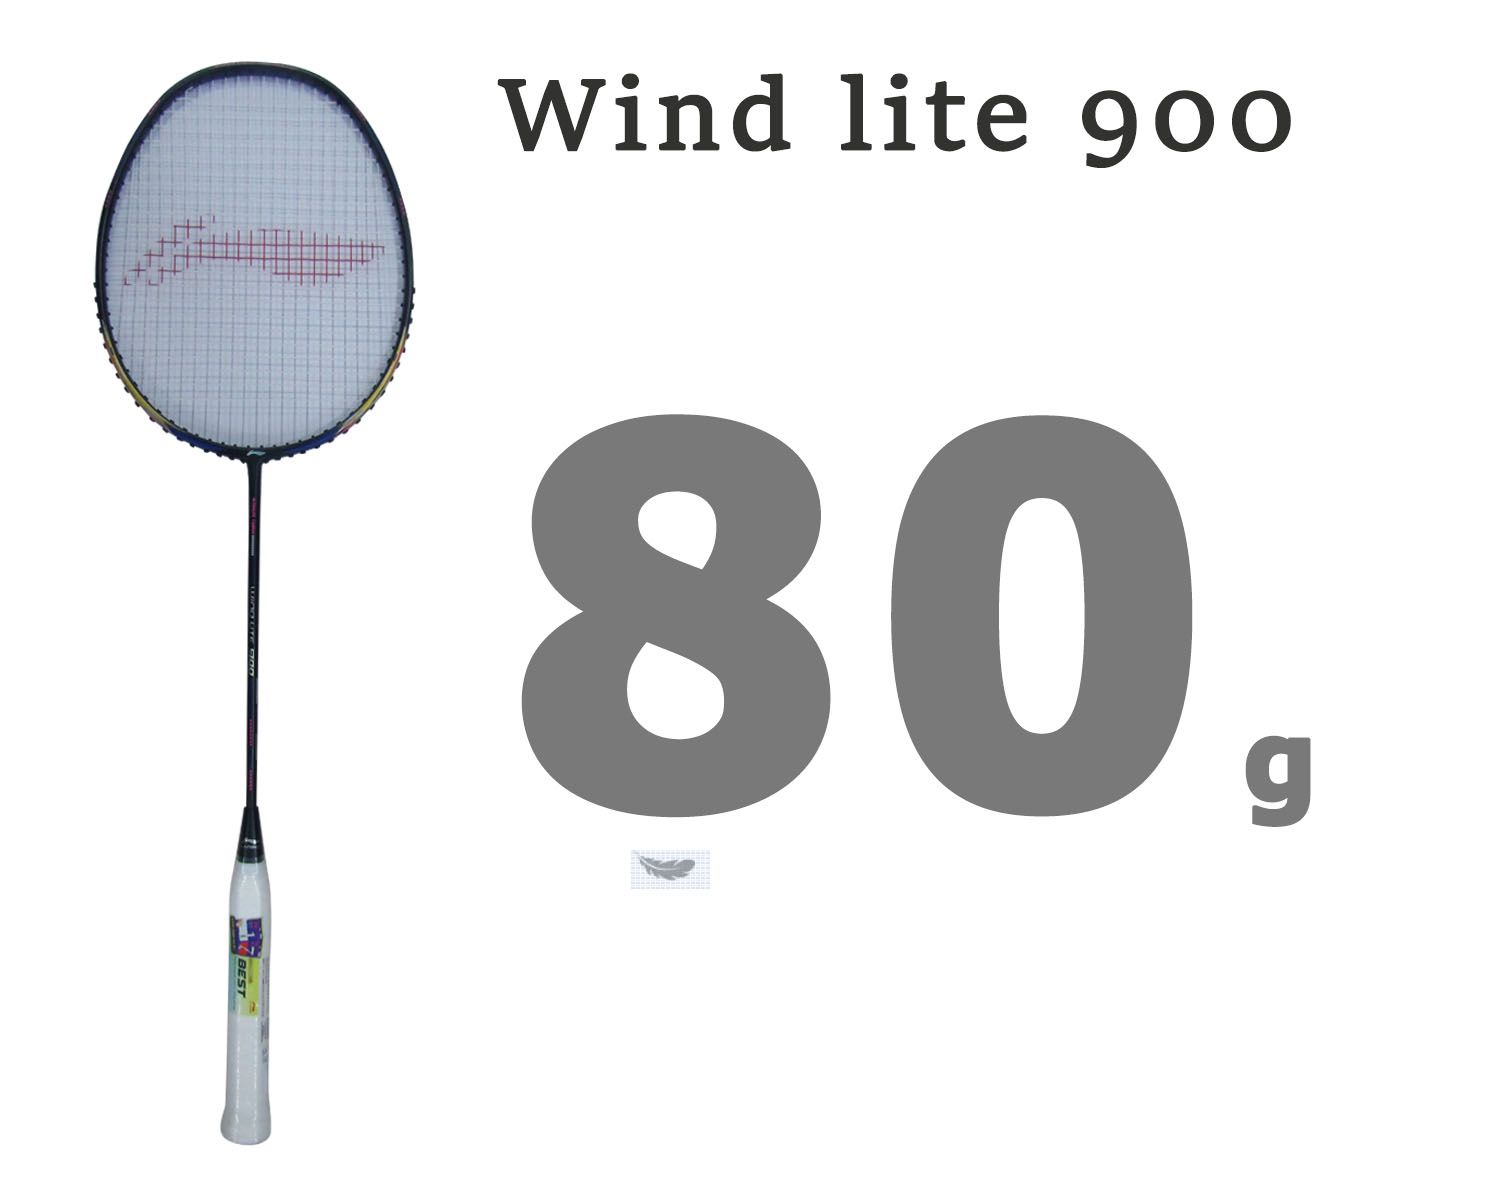 Li Ning Wind Lite 900 Badminton Racket